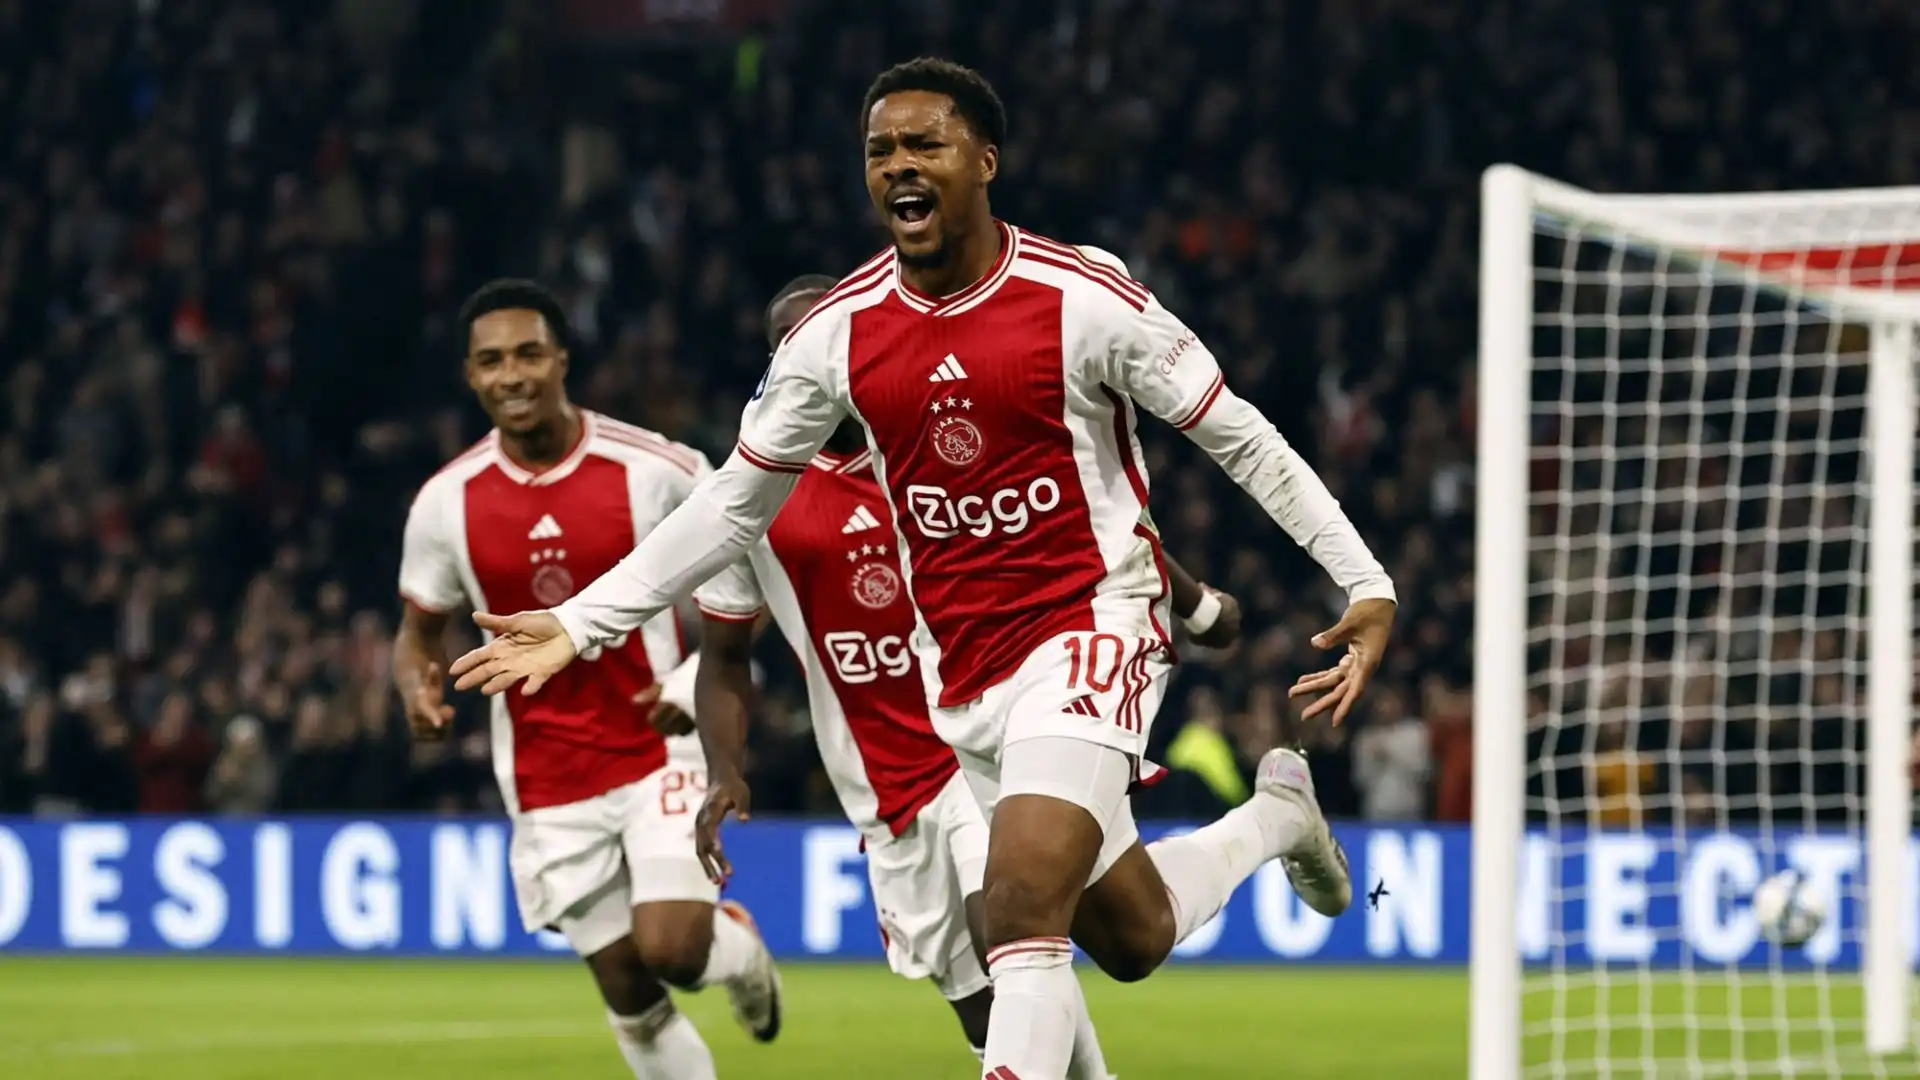 L'Ajax ha fatto il prezzo per l'attaccante inglese: chiede 15 milioni di euro